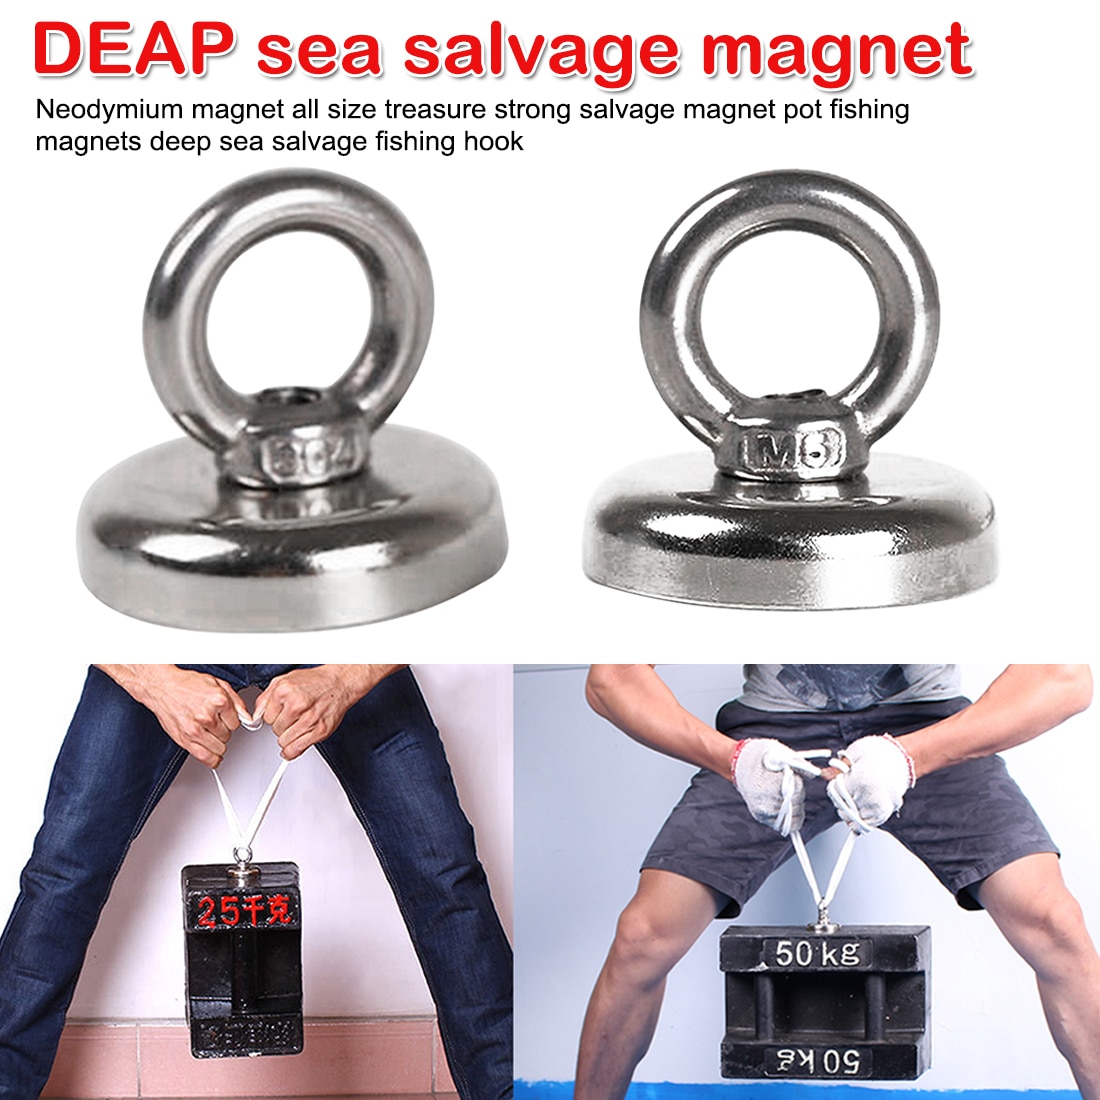 Krachtige Gat Salvage Magneten Pot Magneten Permanente Diepzee Salvage Vissen Haak Magneet Sterke Salvage Magneet Pot Vissen